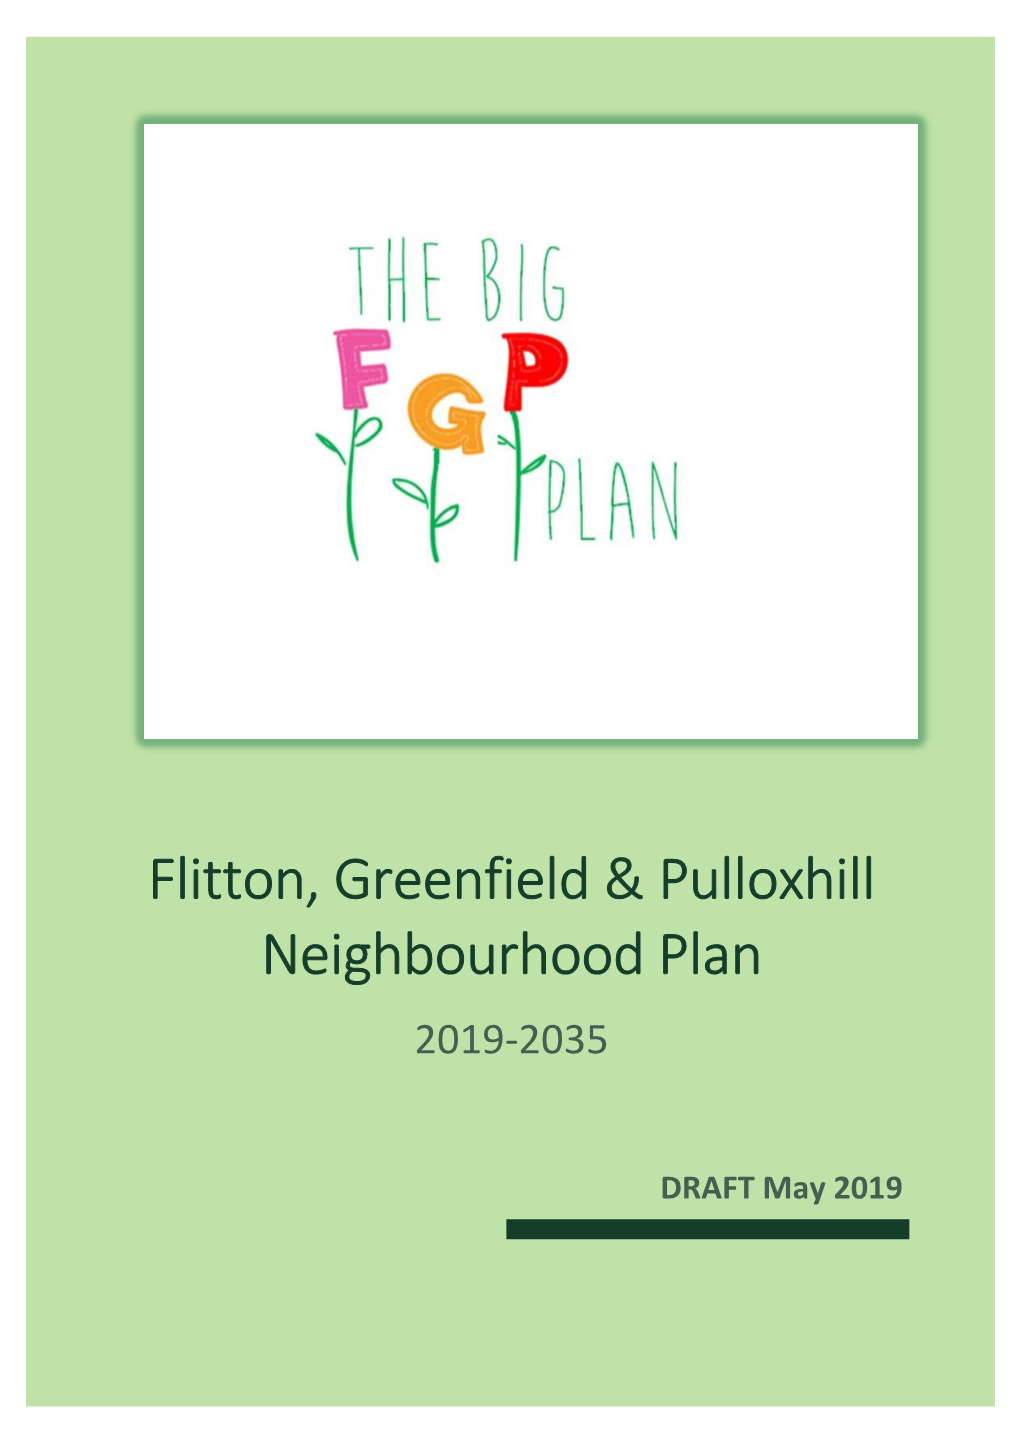 Flitton, Greenfield & Pulloxhill Neighbourhood Plan